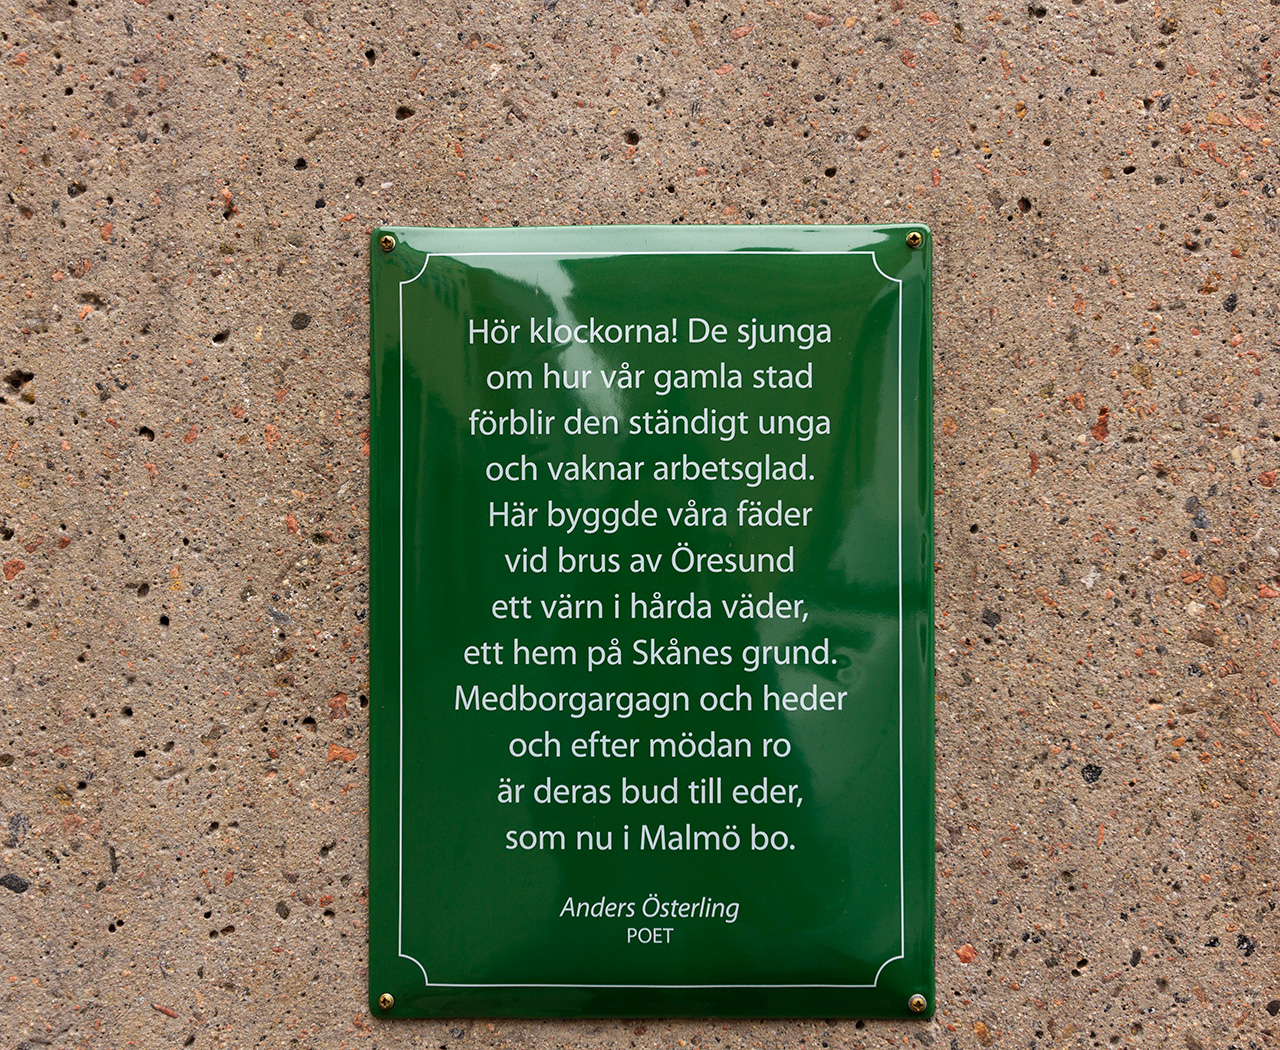 Grön skylt med vit text. En dikt av poet Anders Österling. 